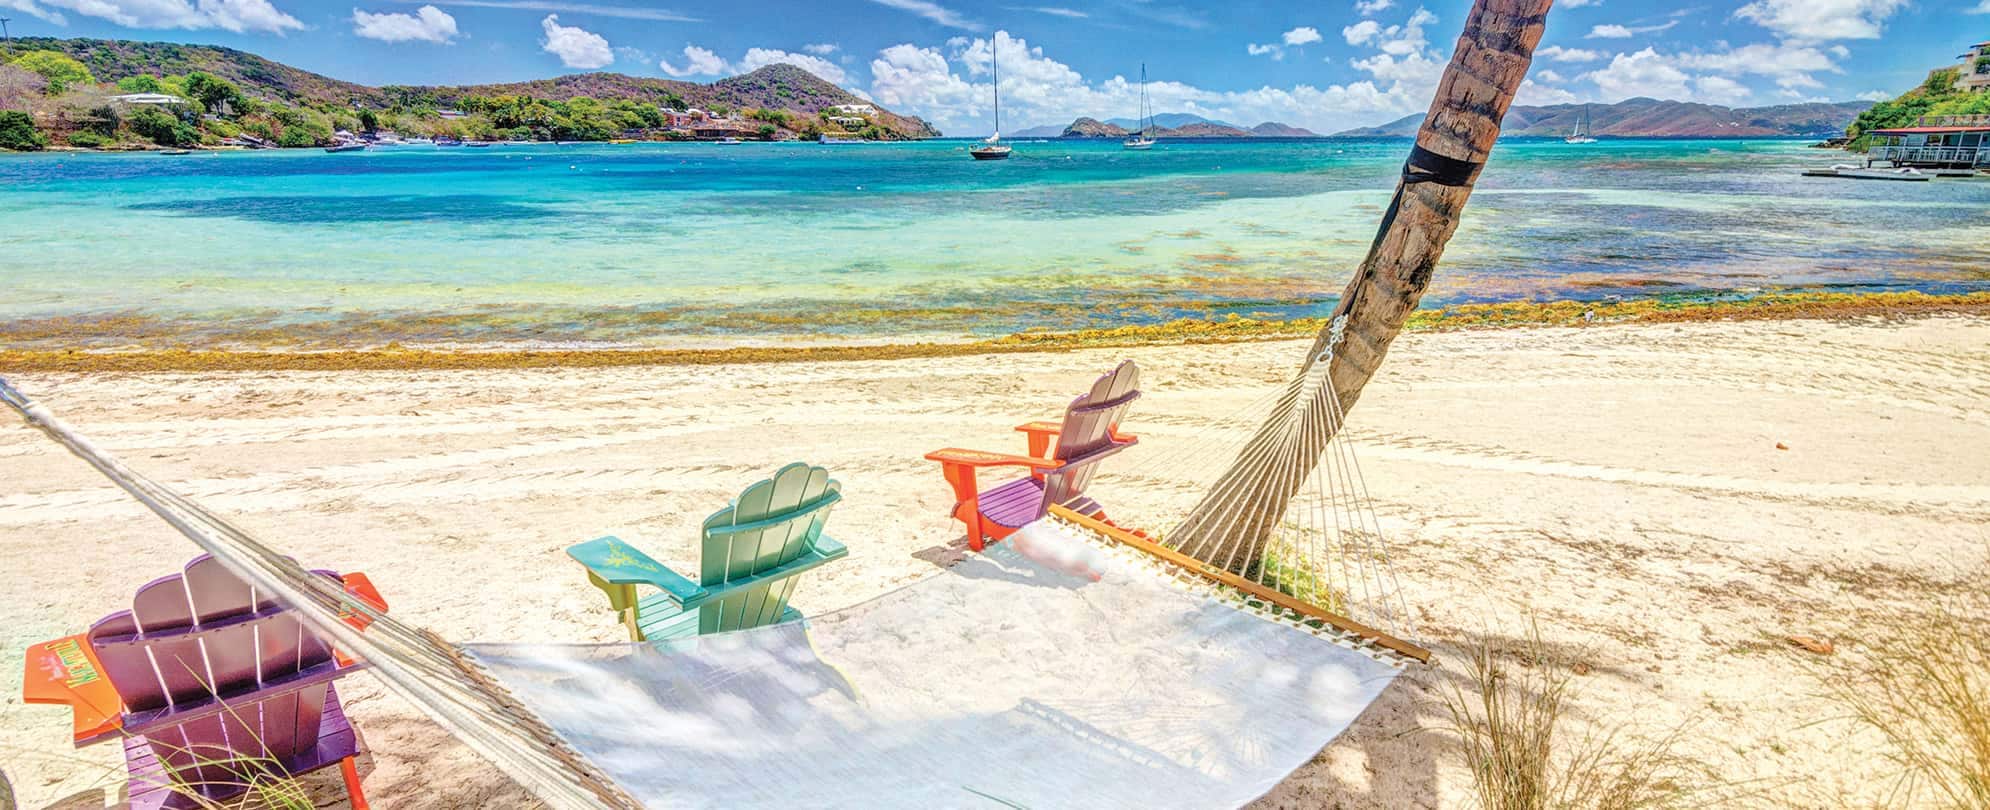 Three beach chairs and a hammock on a tropical beach near clear blue waters